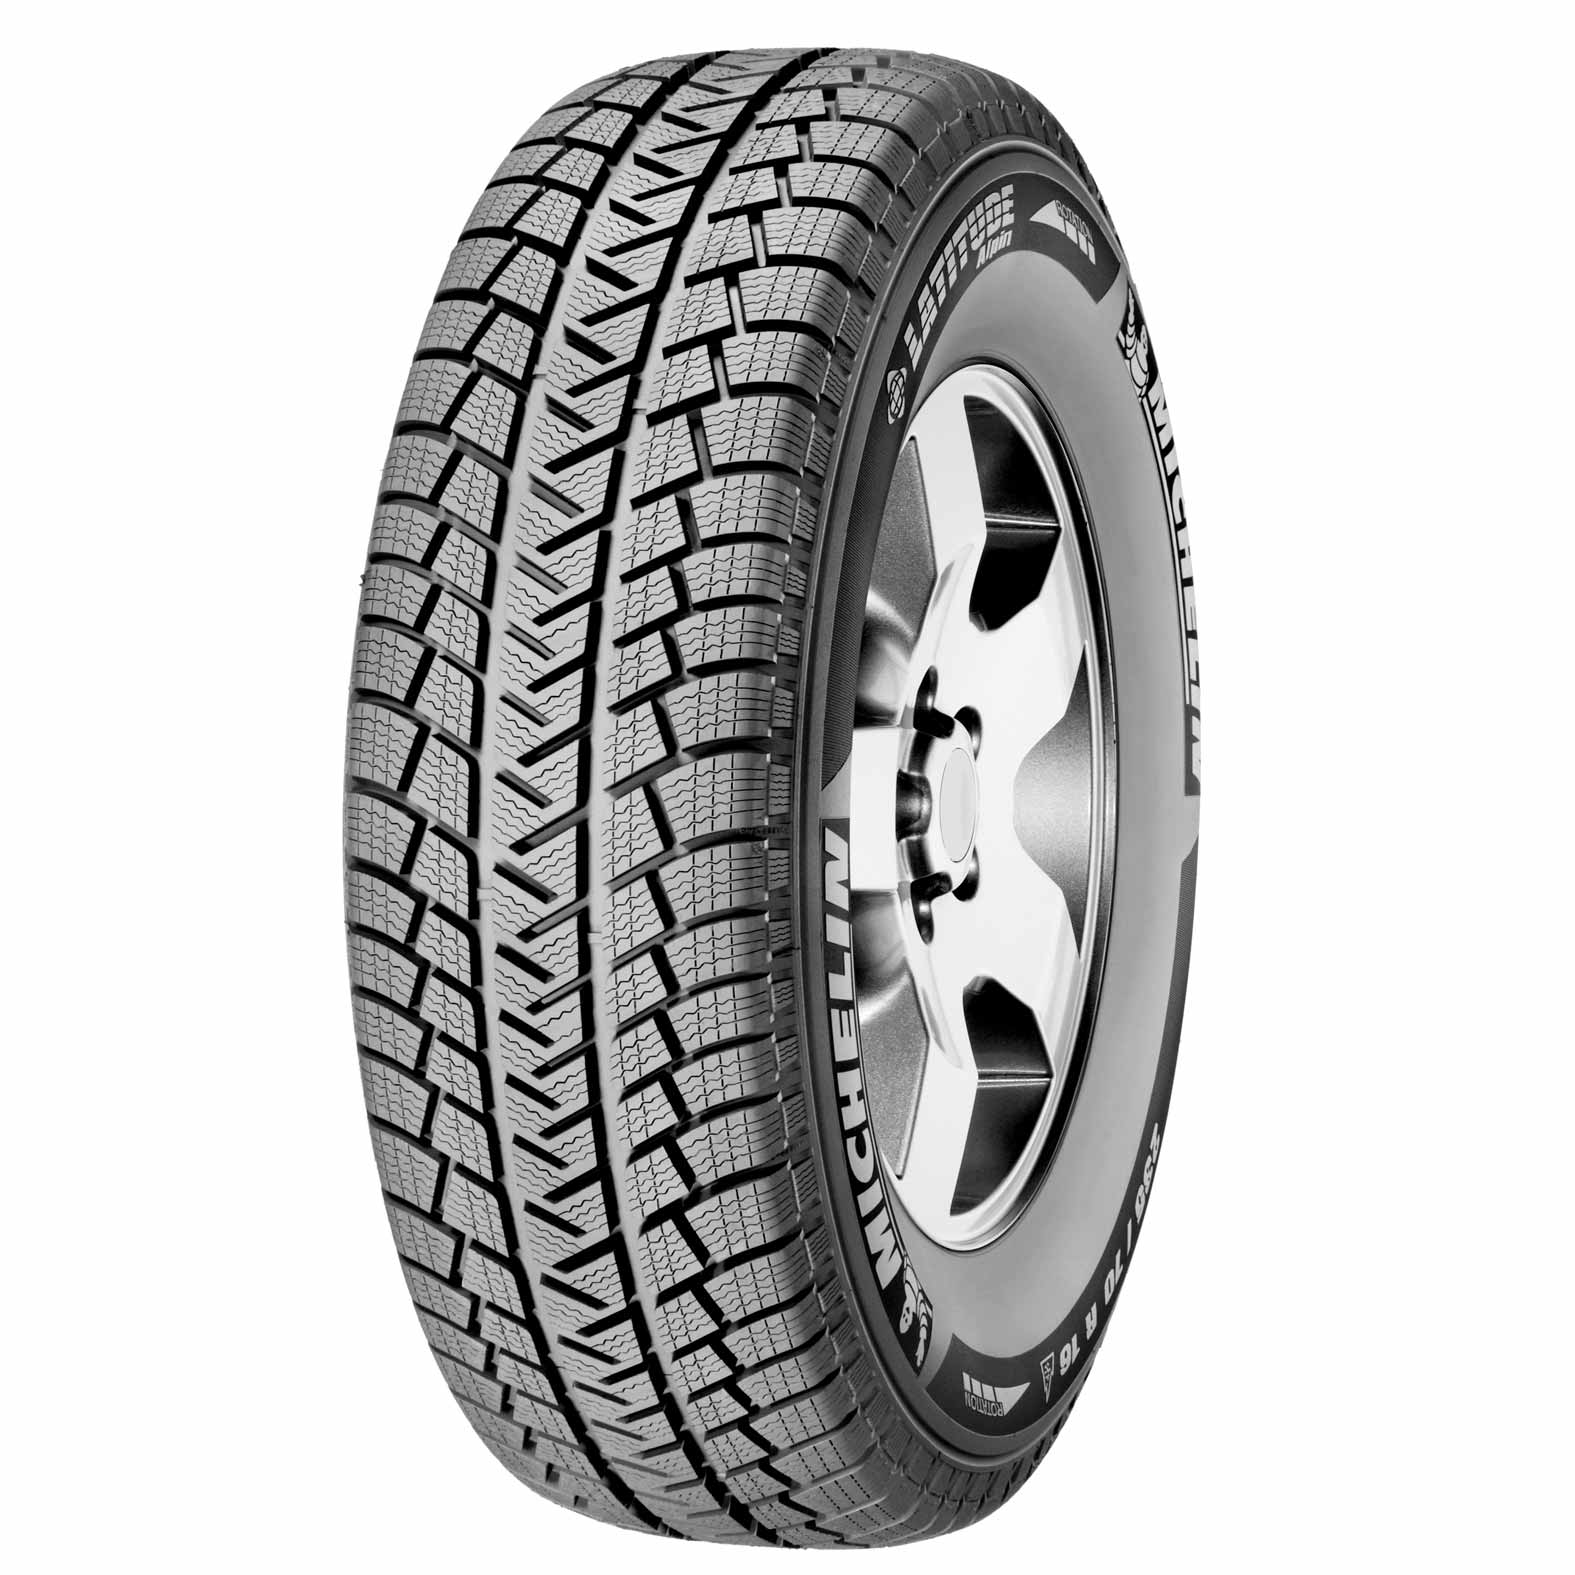 Alpin | Kal tire Winter Michelin Tires Latitude for